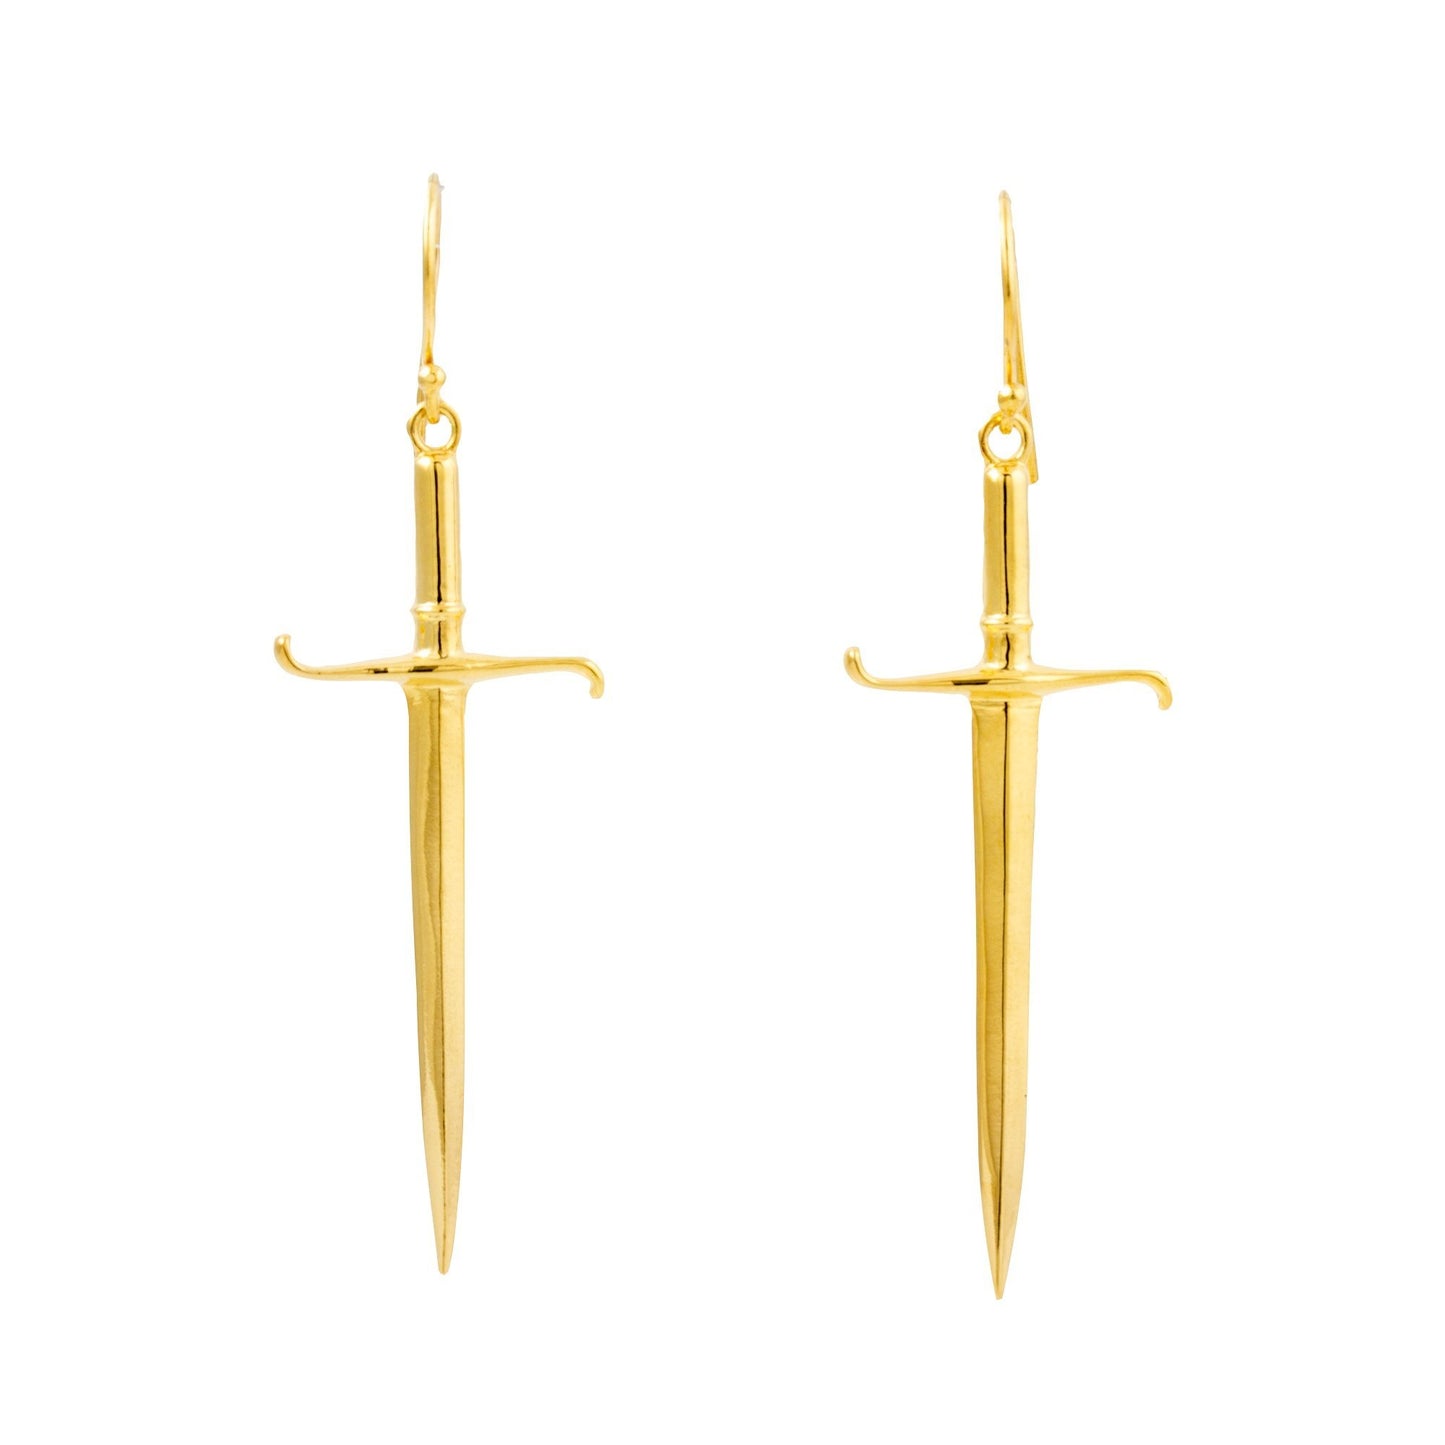 Gold "Estoc" Sword Earrings - Kingdom Jewelry